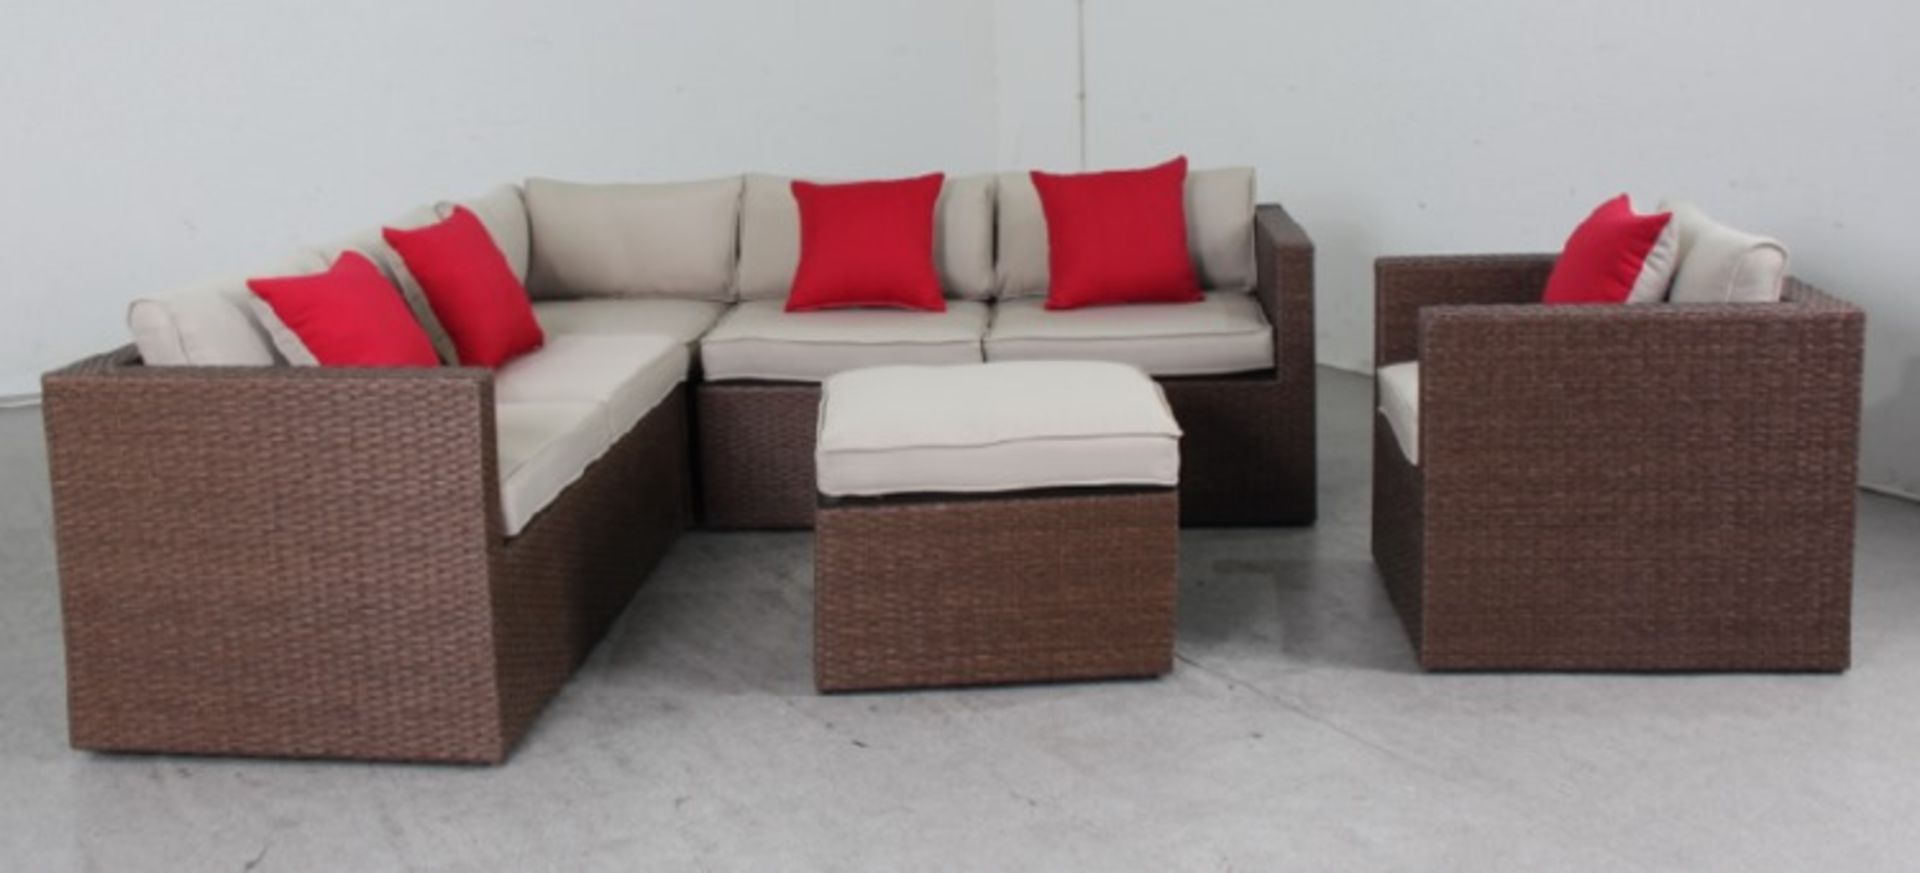 Brandon Corner Sofa, Armchair and coffee table - Image 2 of 3